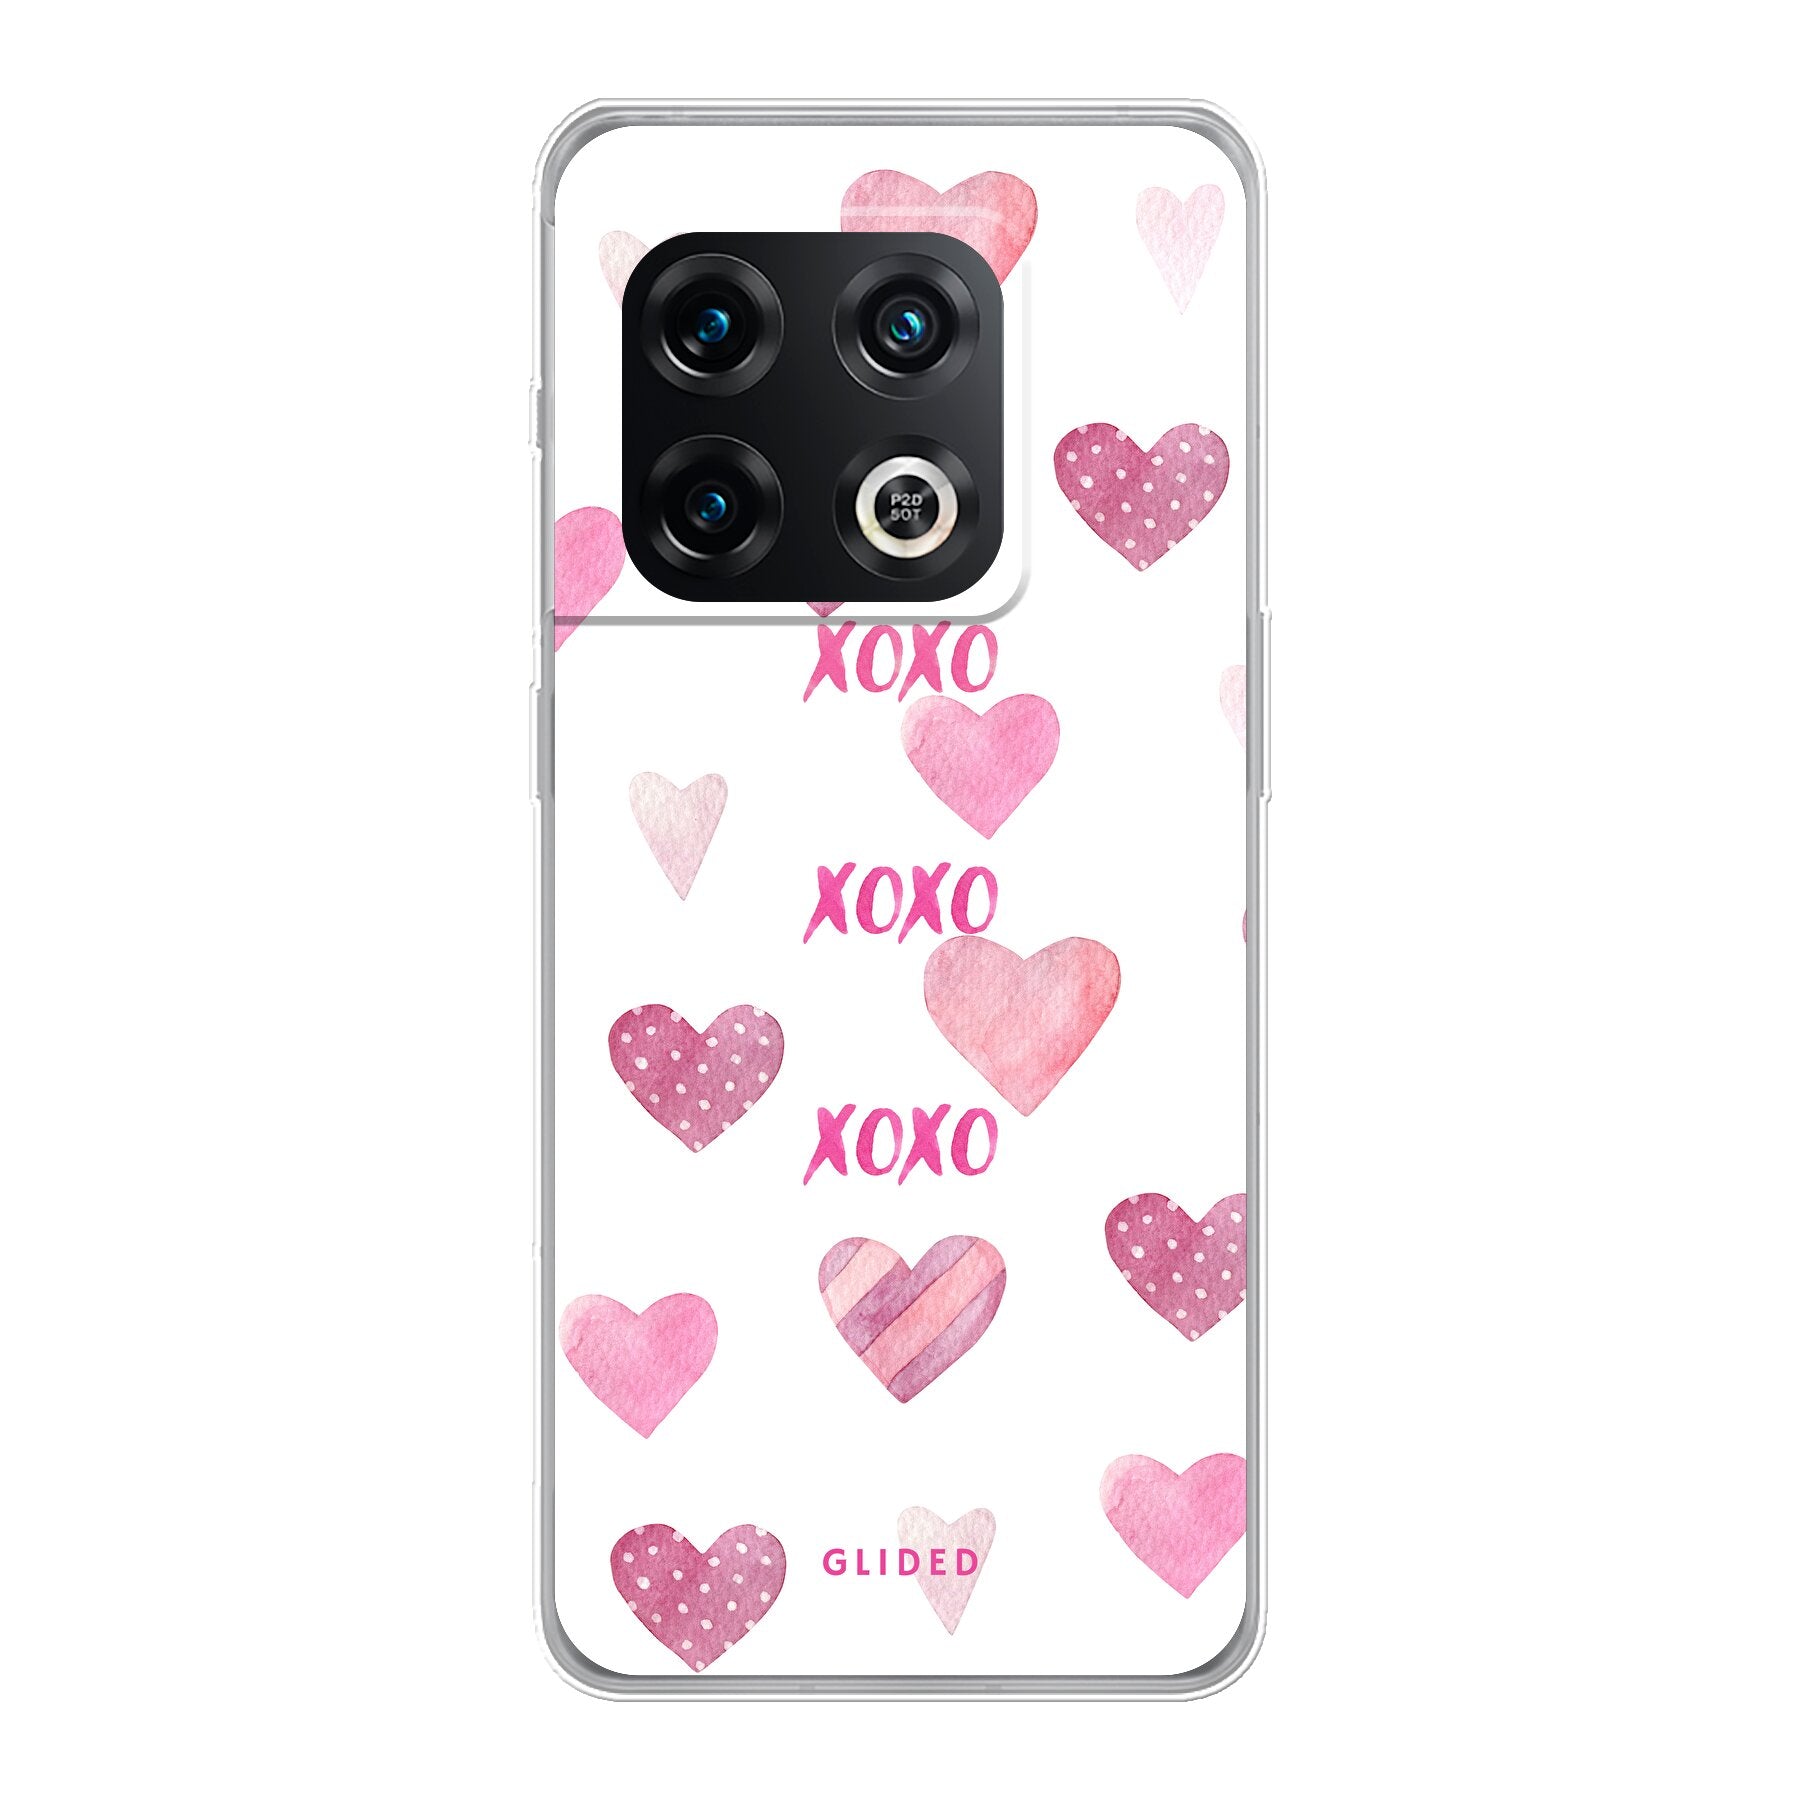 Xoxo - OnePlus 10 Pro - Soft case